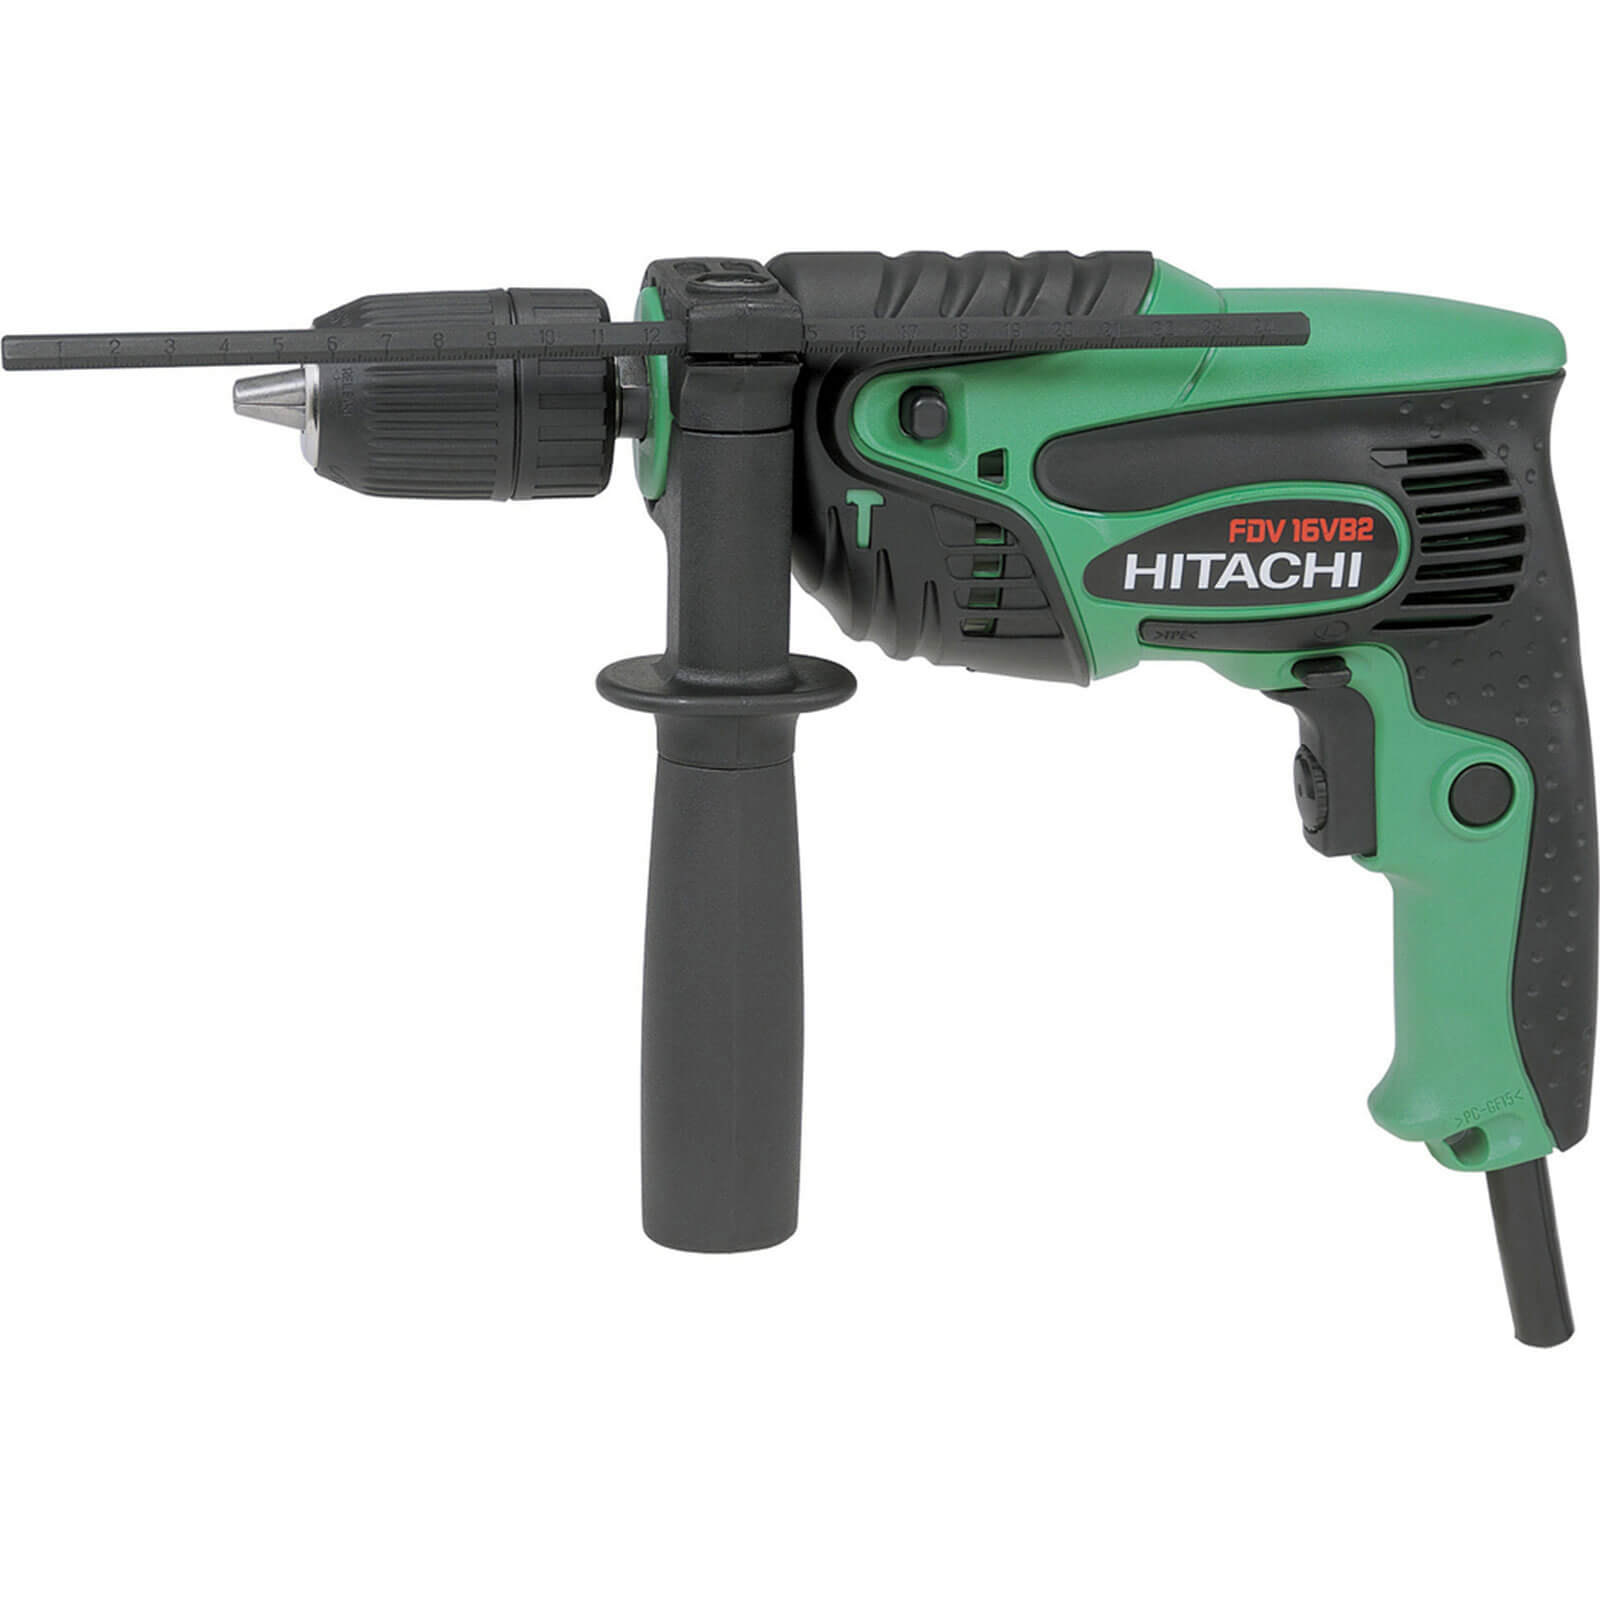 Hitachi FDV16VB2 Electric Hammer Drill 550w 240v